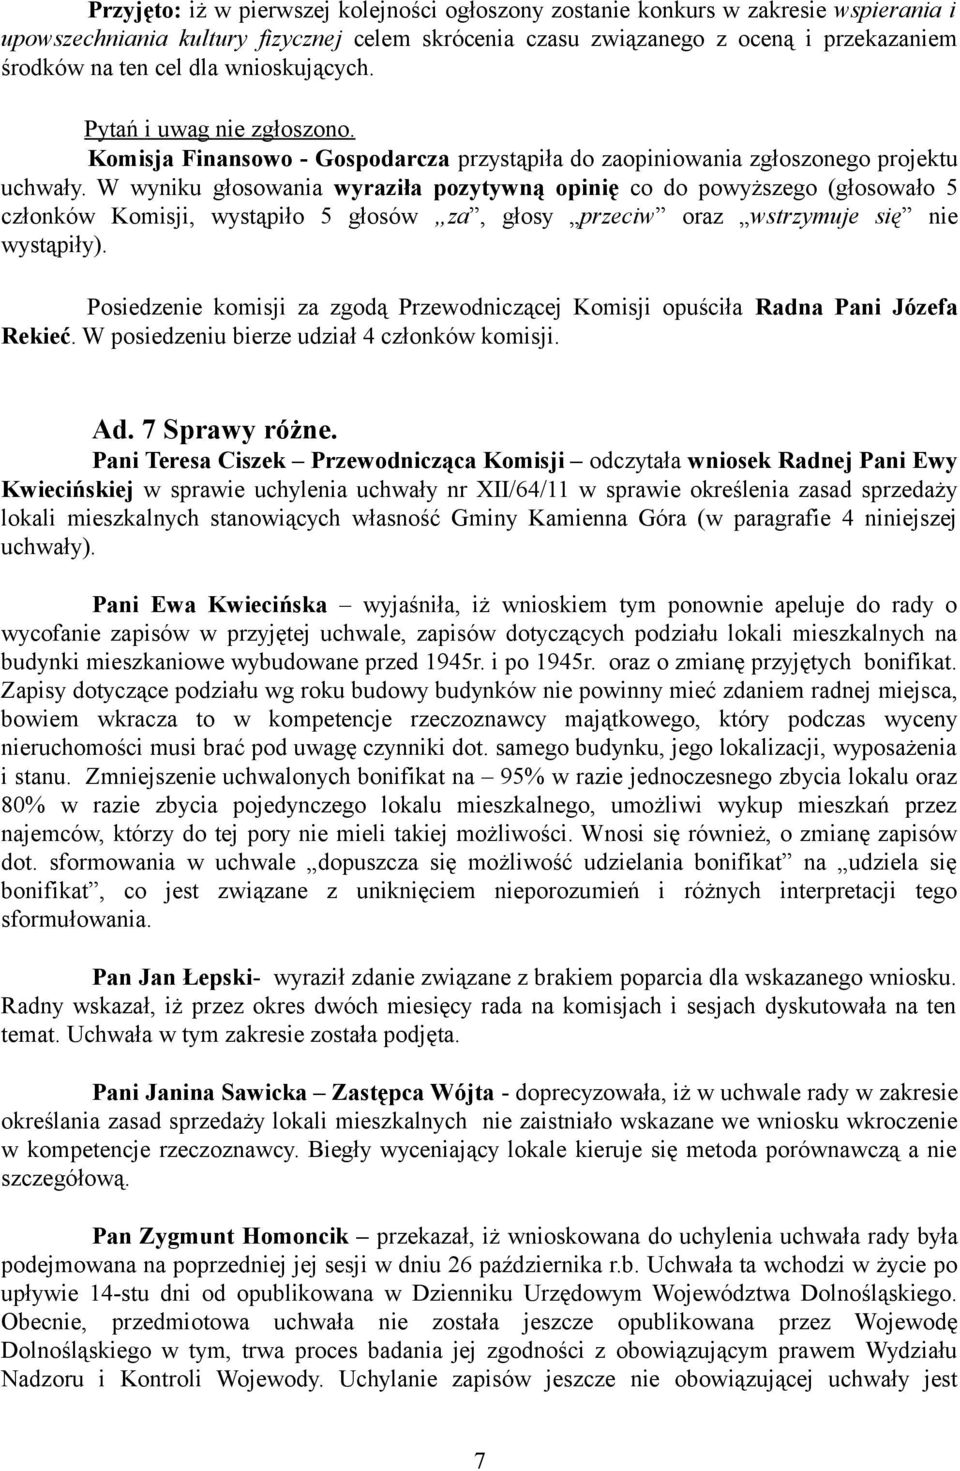 Pani Teresa Ciszek Przewodnicząca Komisji odczytała wniosek Radnej Pani Ewy Kwiecińskiej w sprawie uchylenia uchwały nr XII/64/11 w sprawie określenia zasad sprzedaży lokali mieszkalnych stanowiących